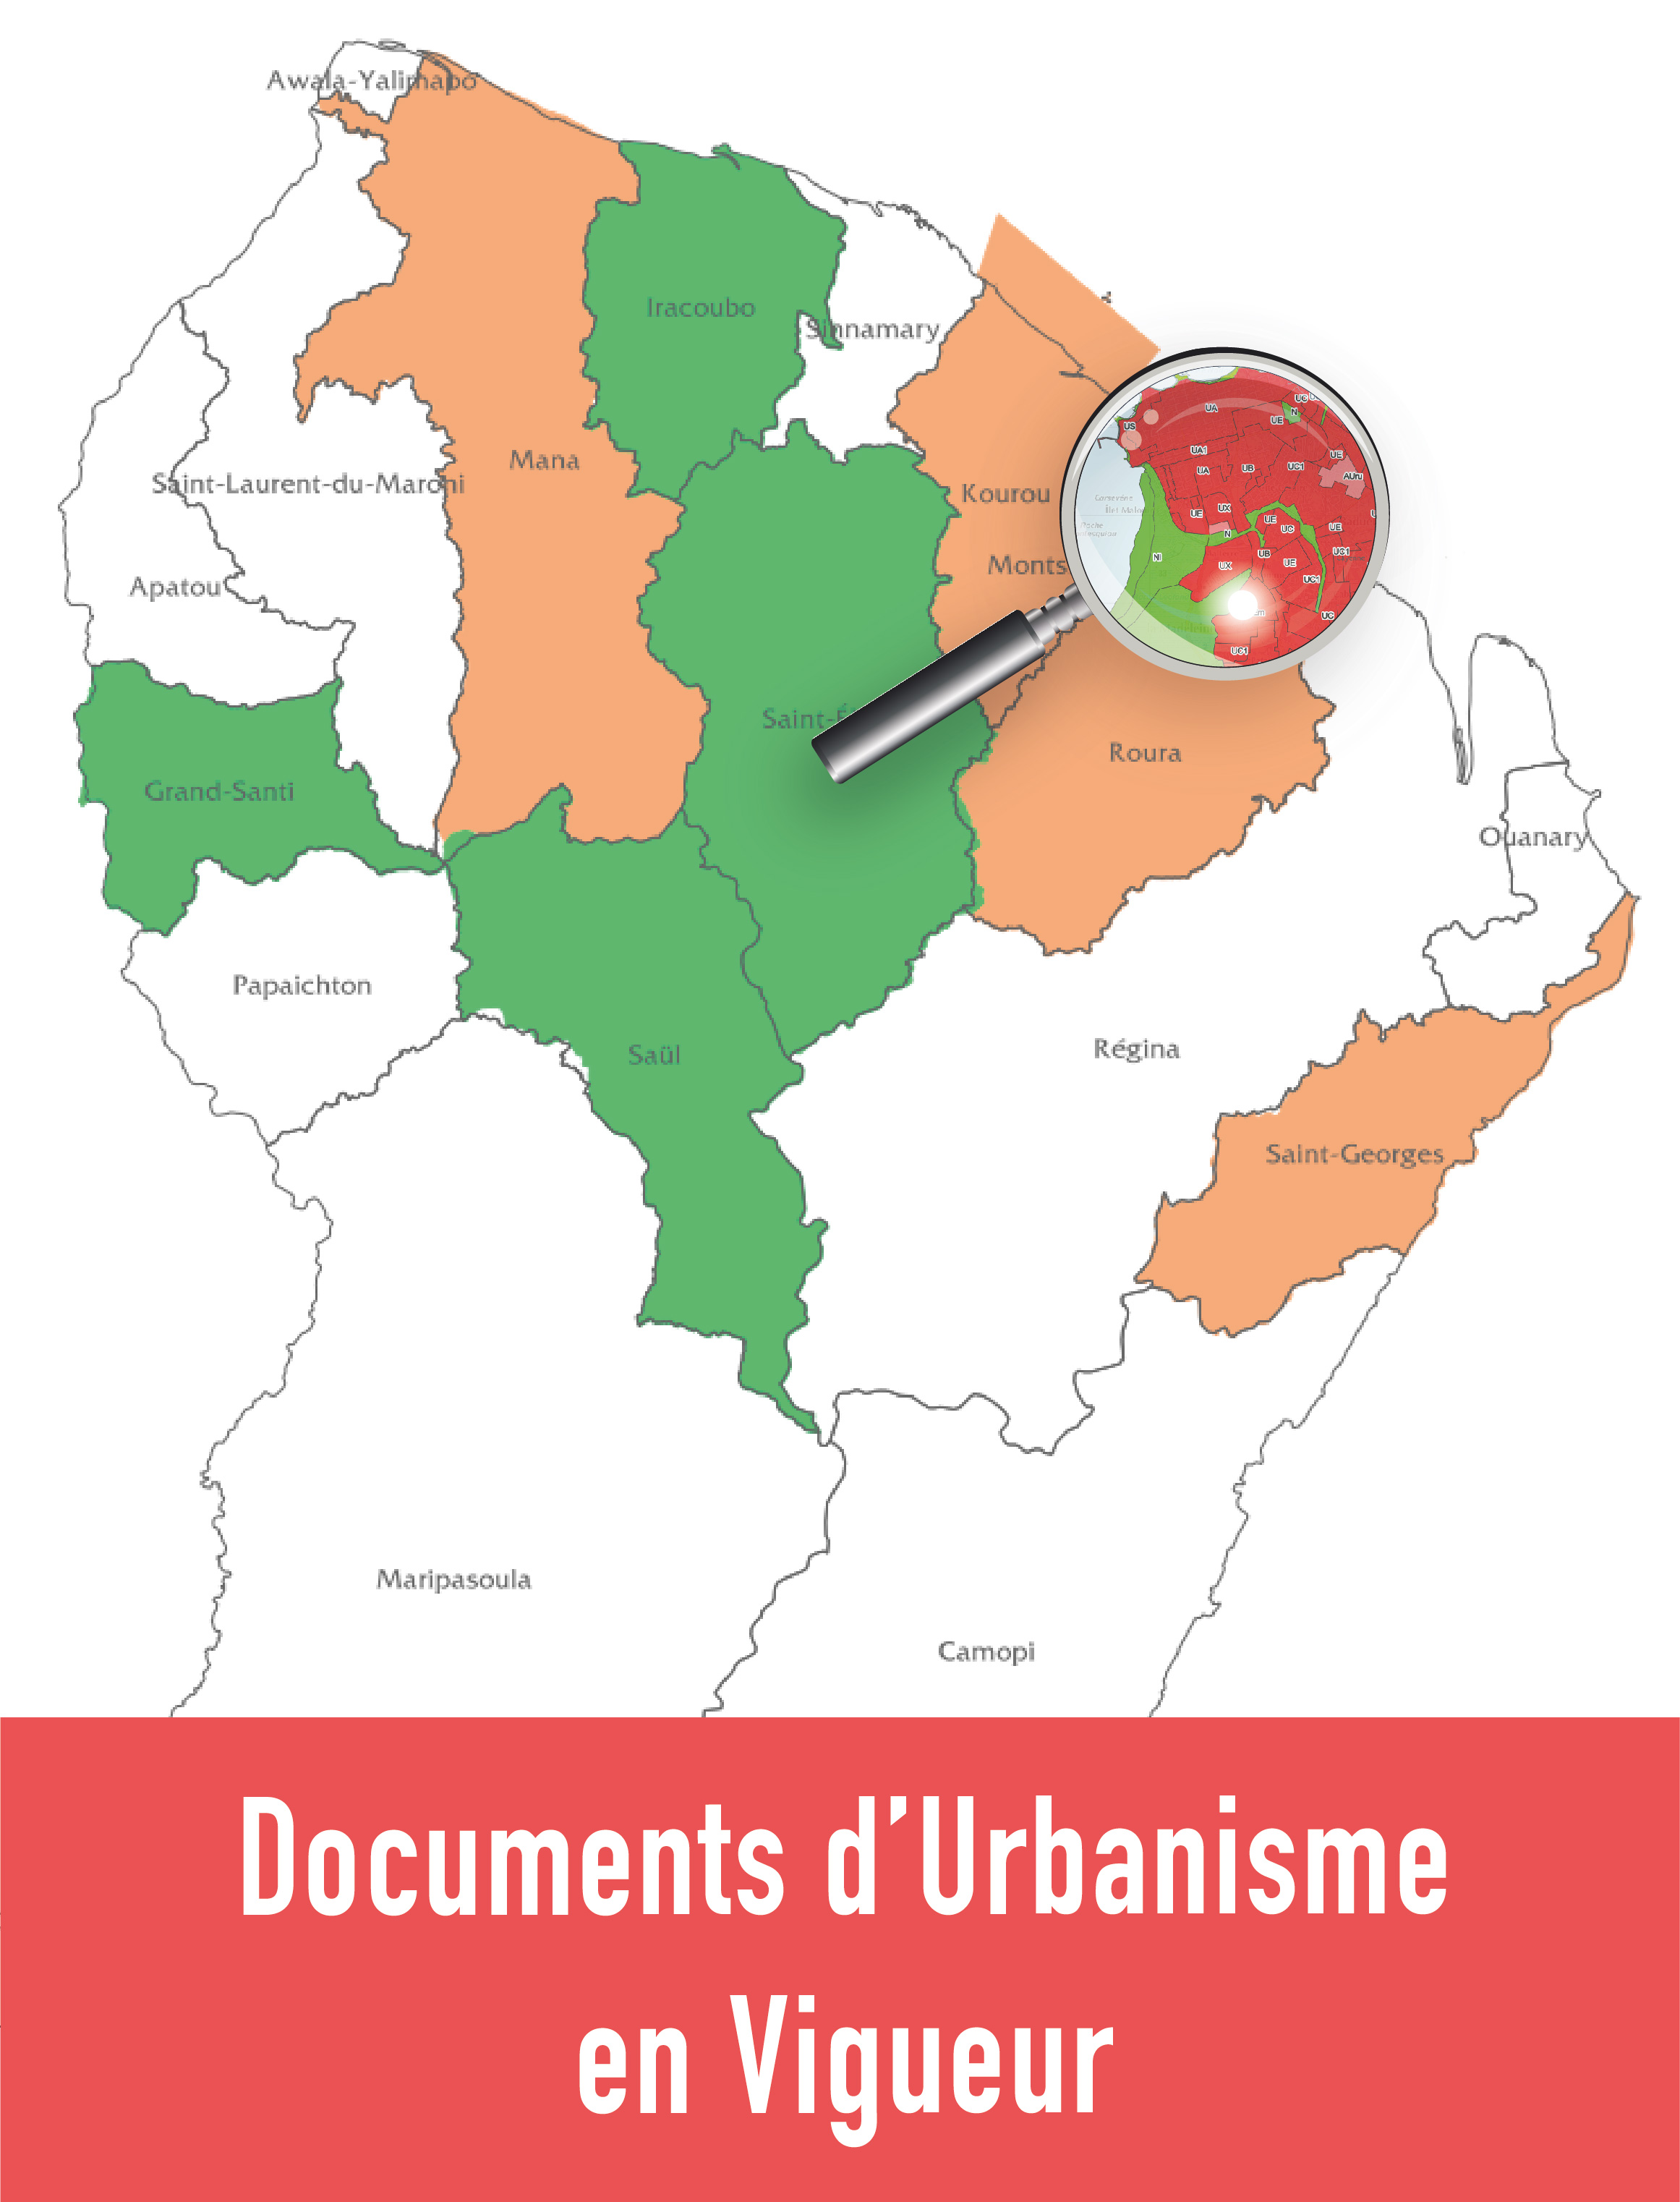 Documents d'urbanisme en vigueur en Guyane